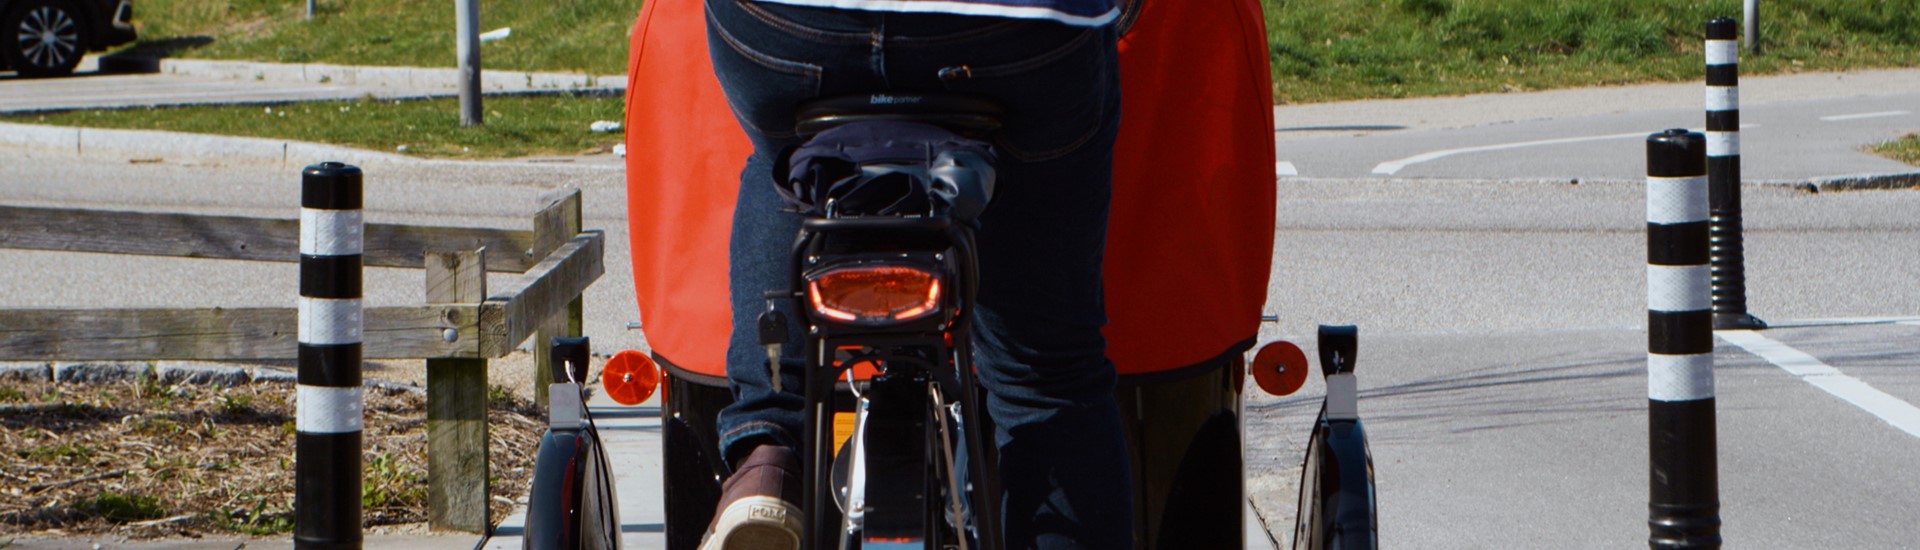 Nihola-ladcykel-med-cykelist-set-bagfra.jpg